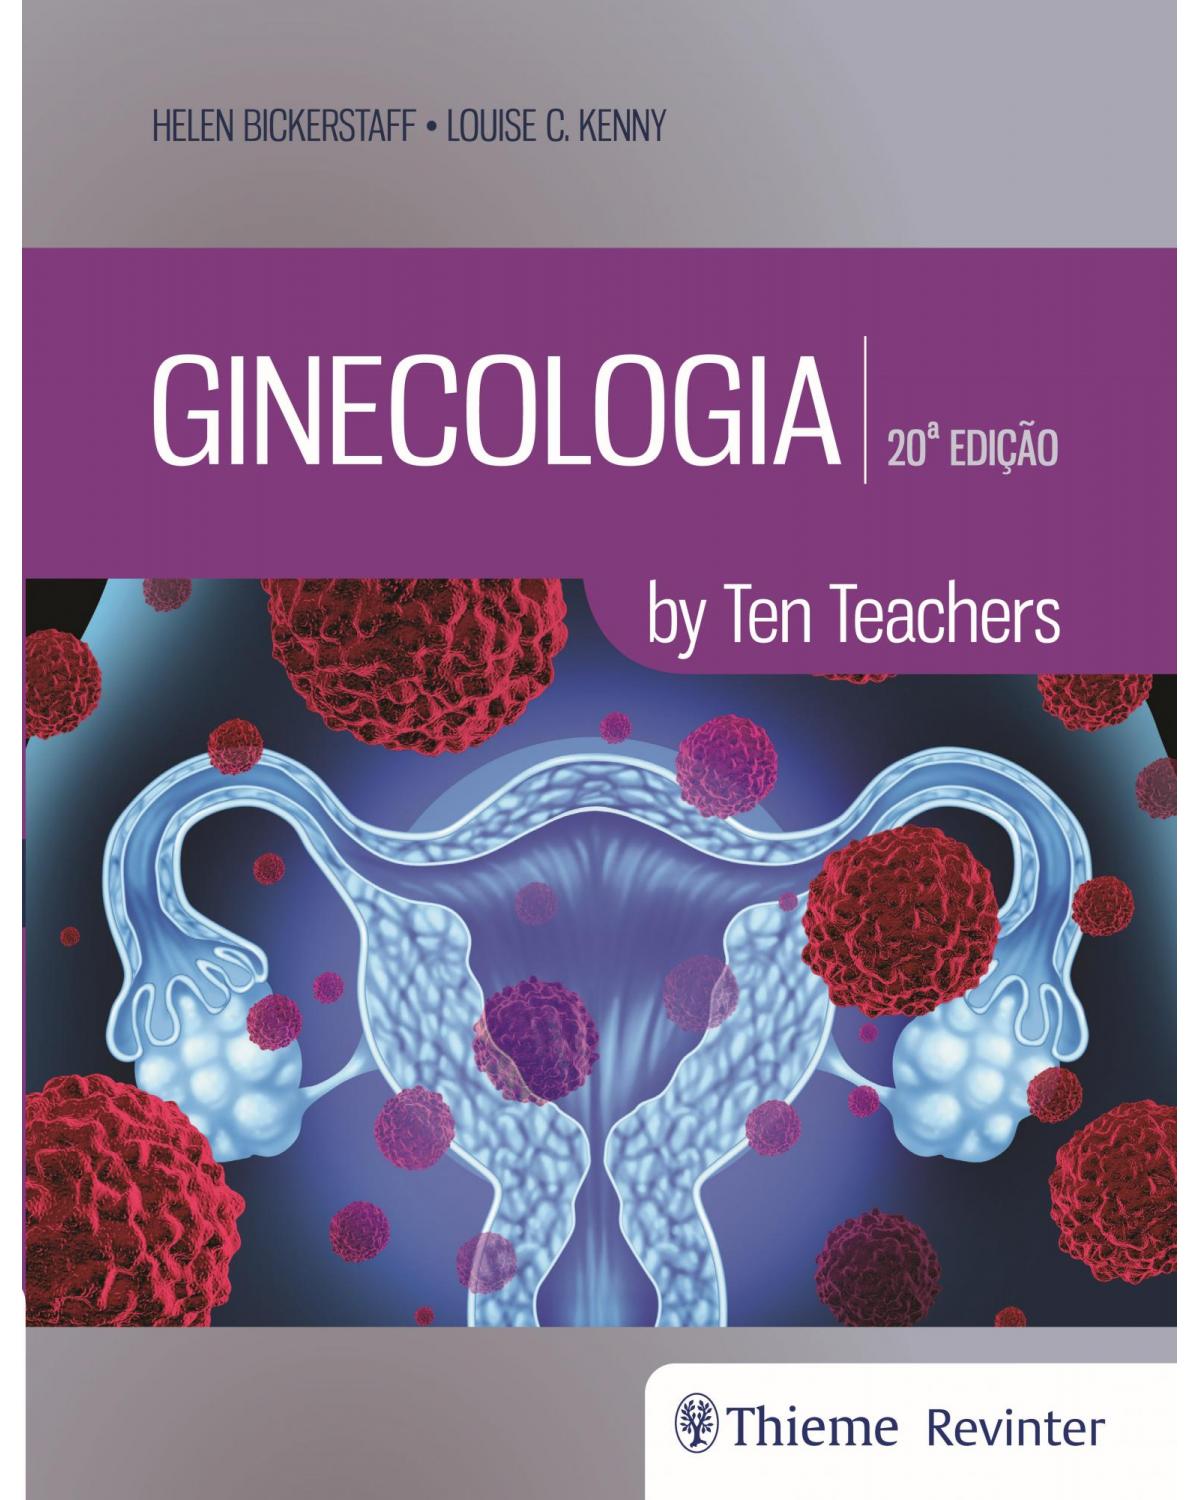 Ginecologia - by Ten Teachers - 20ª Edição | 2019